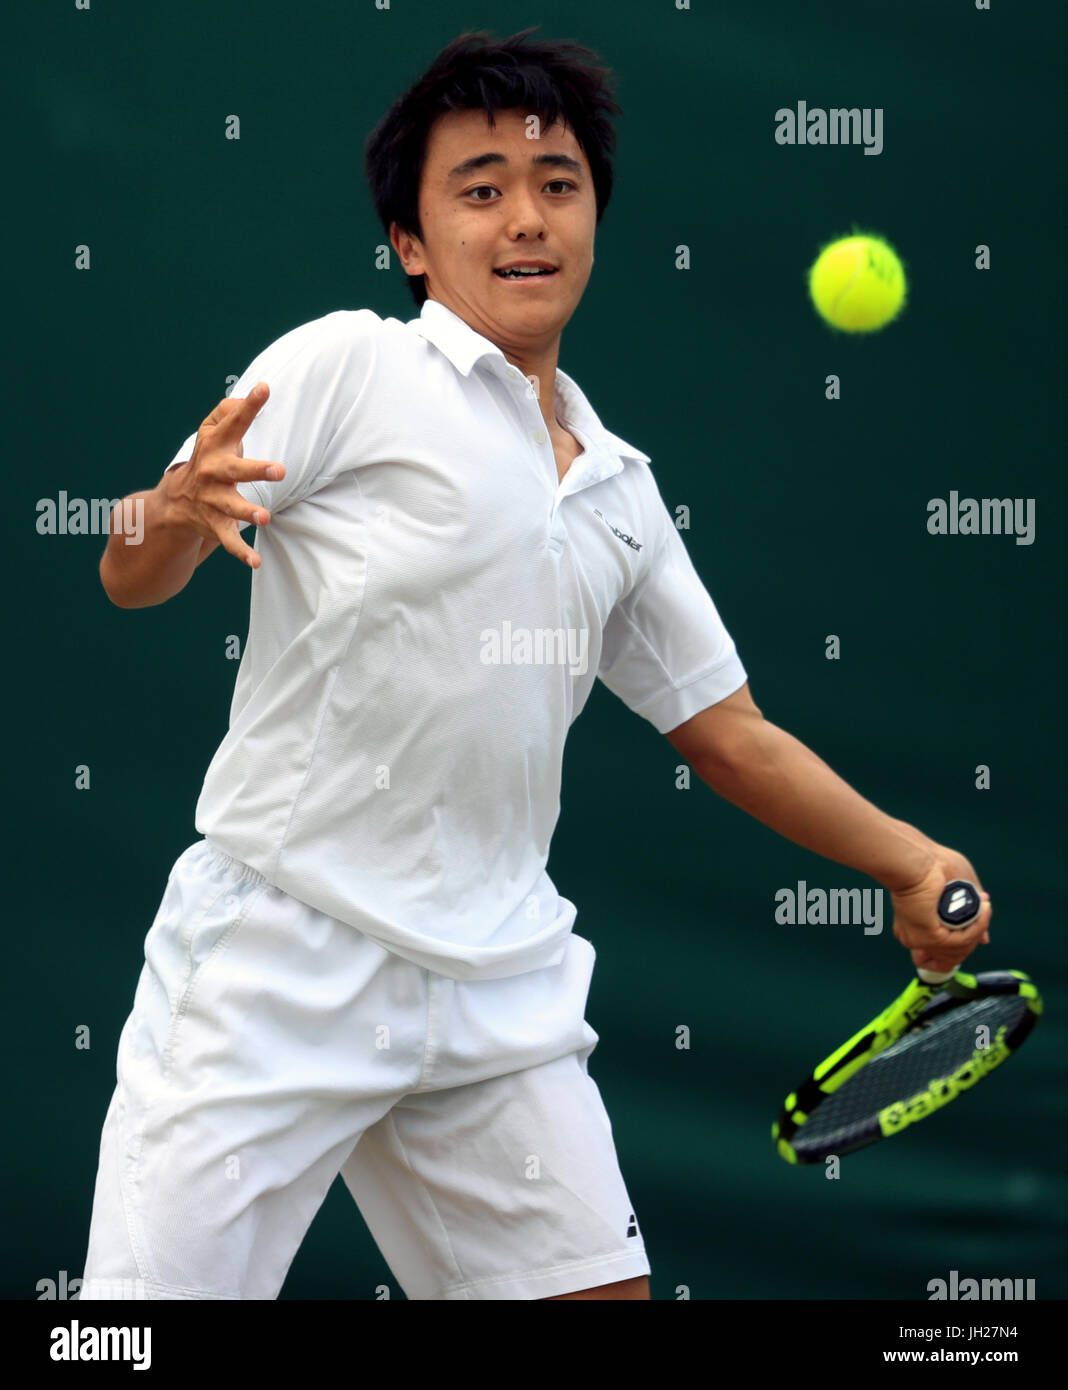 yuta shimizu tennis live